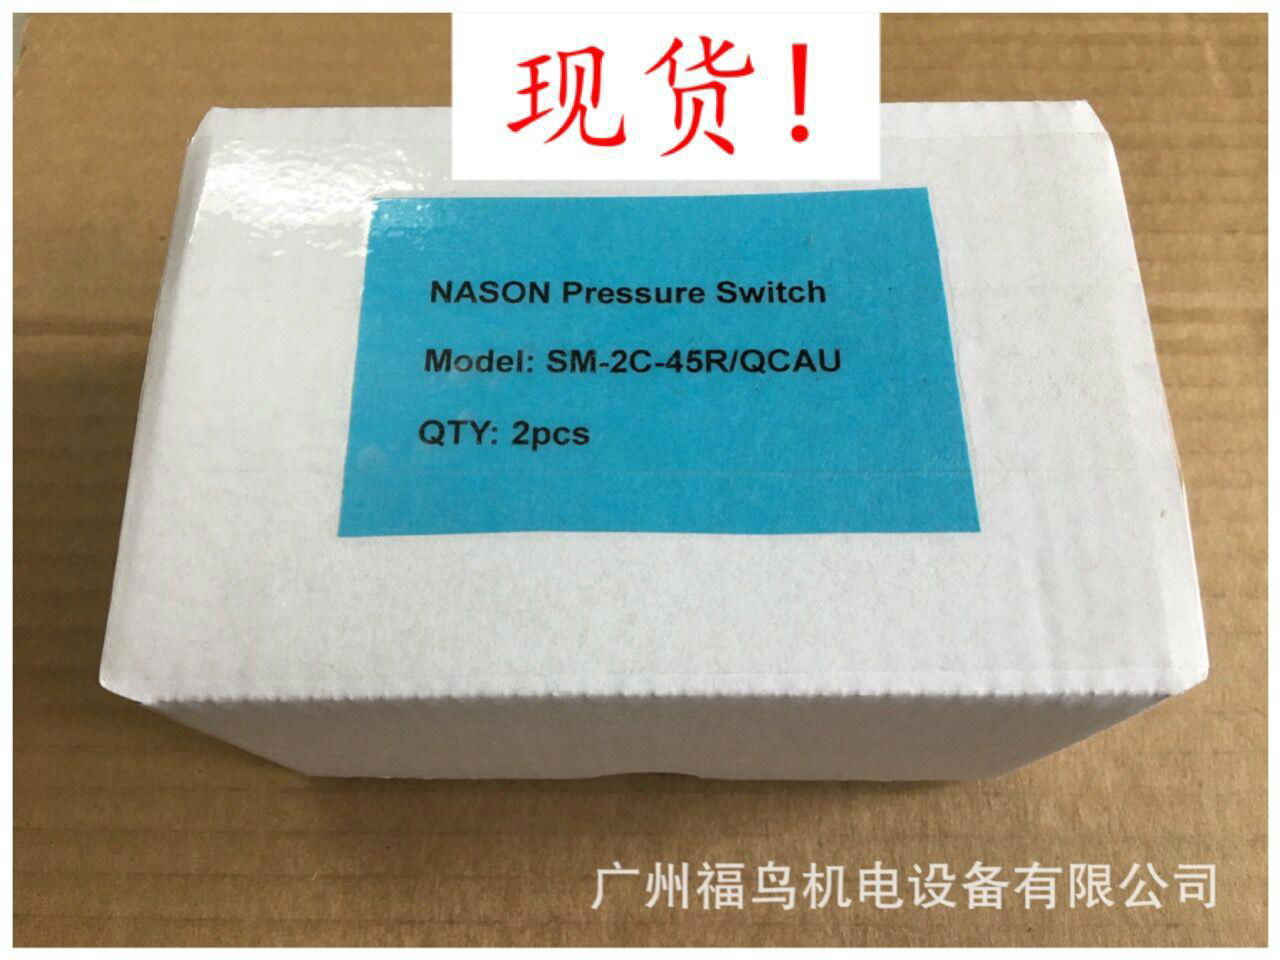 NASON压力开关, 型号: SM-2C-45R/QCAU